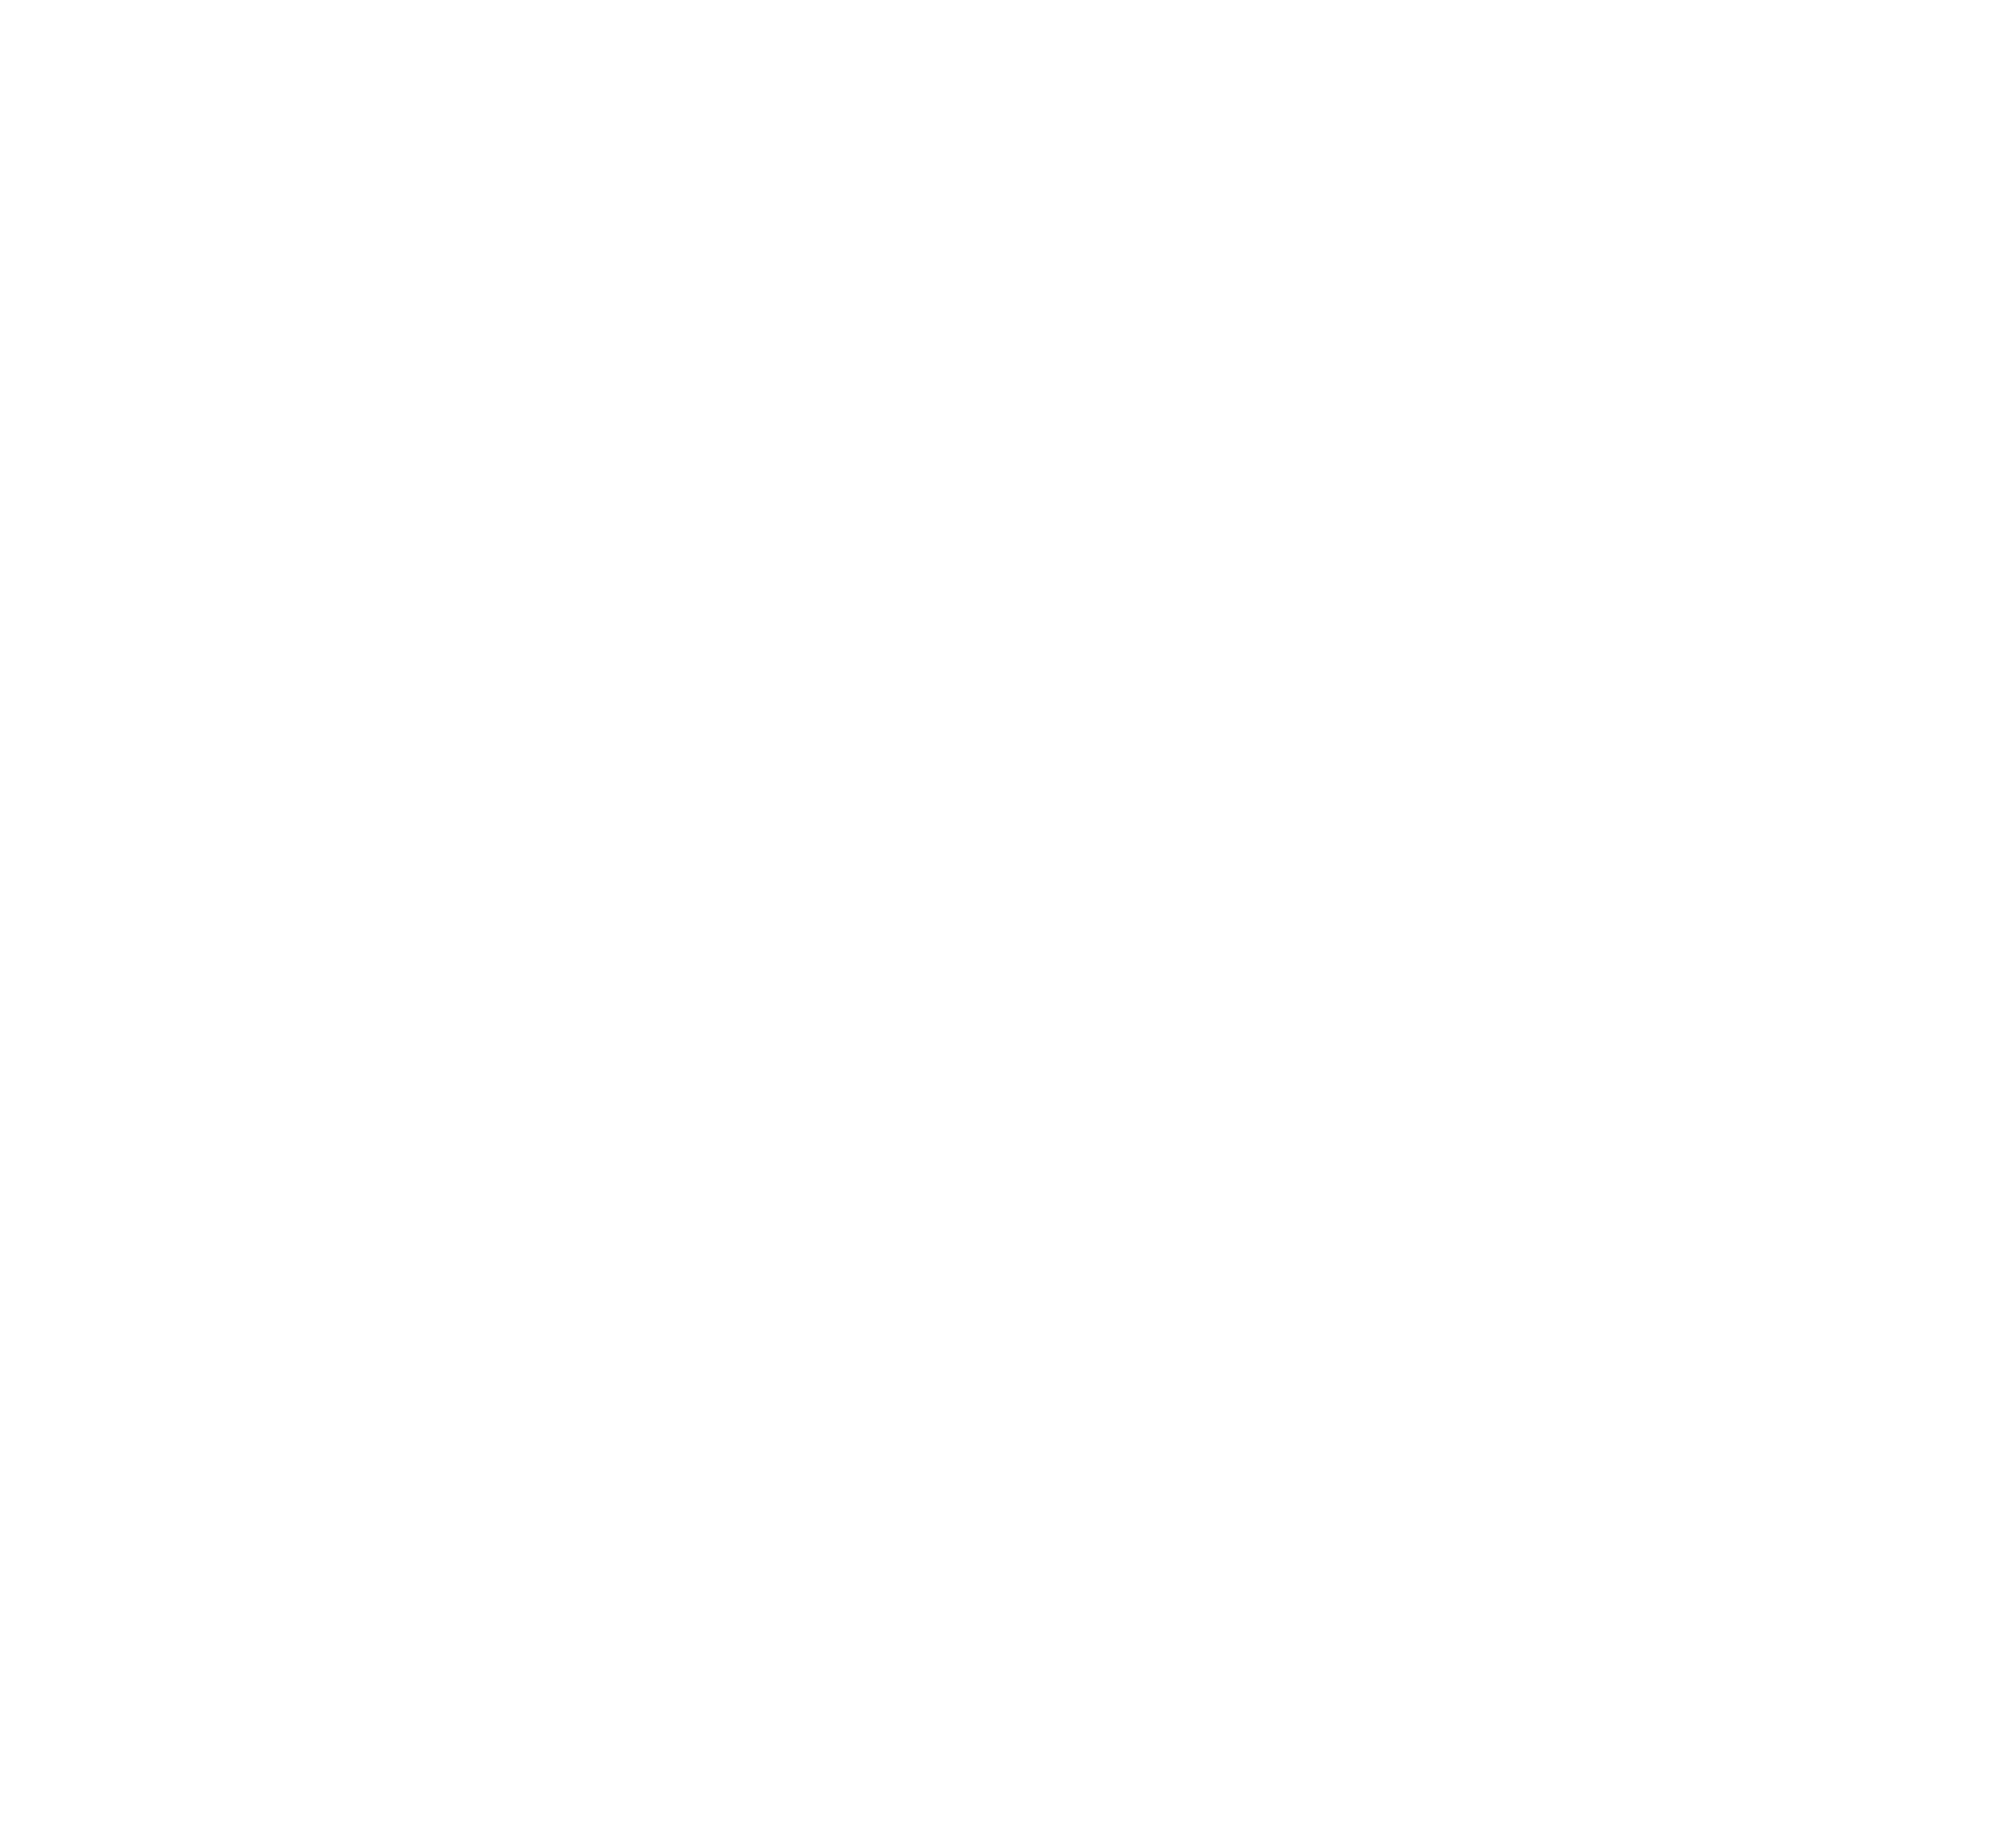 Logo v2